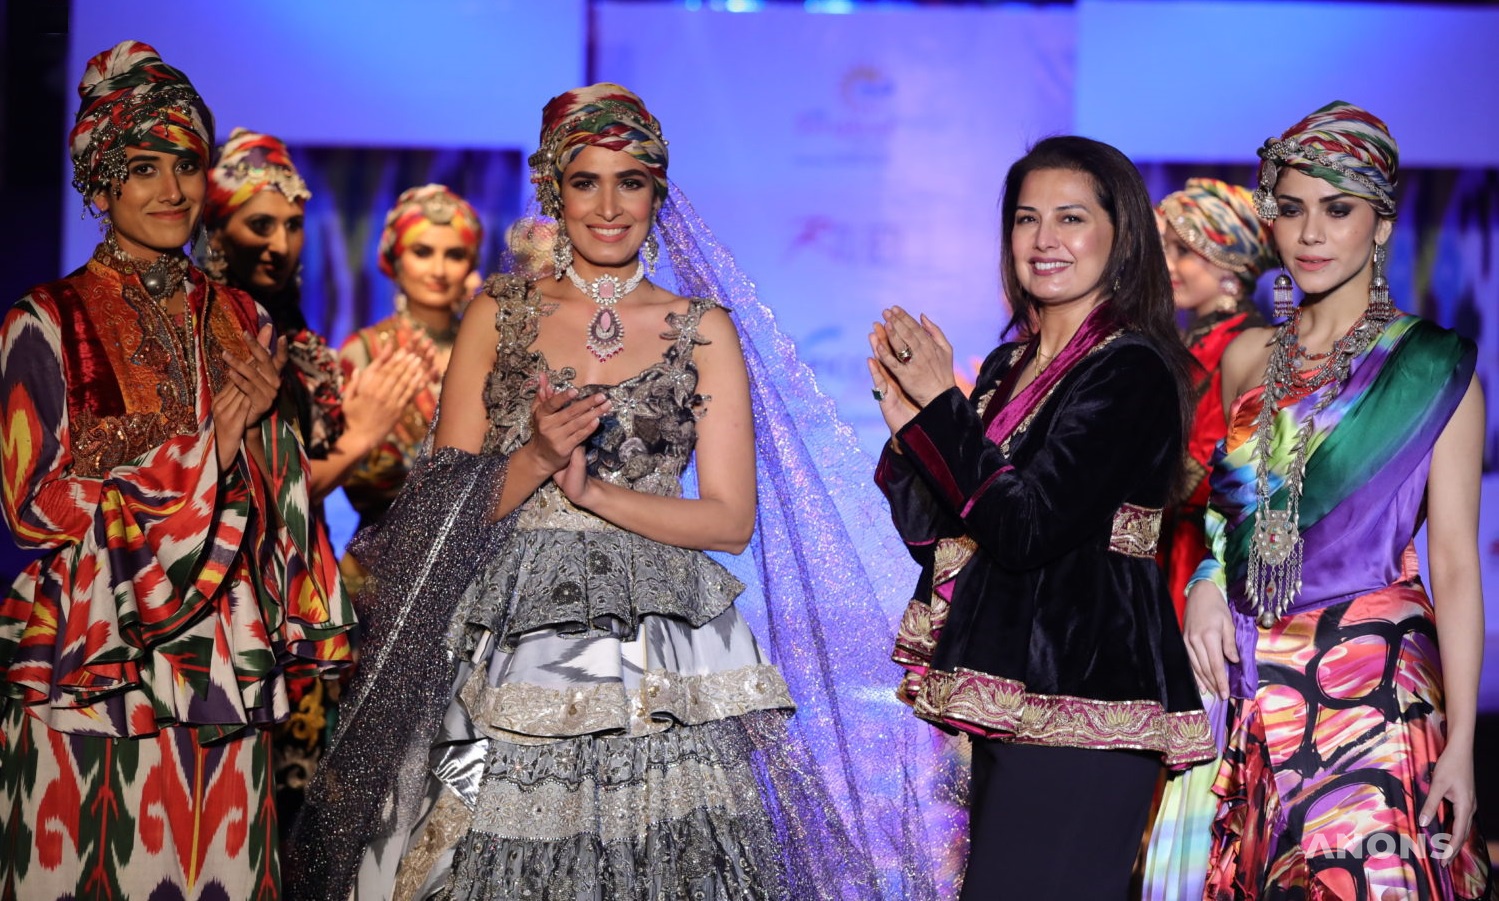 Узбекские наряды на показе мод в Индии